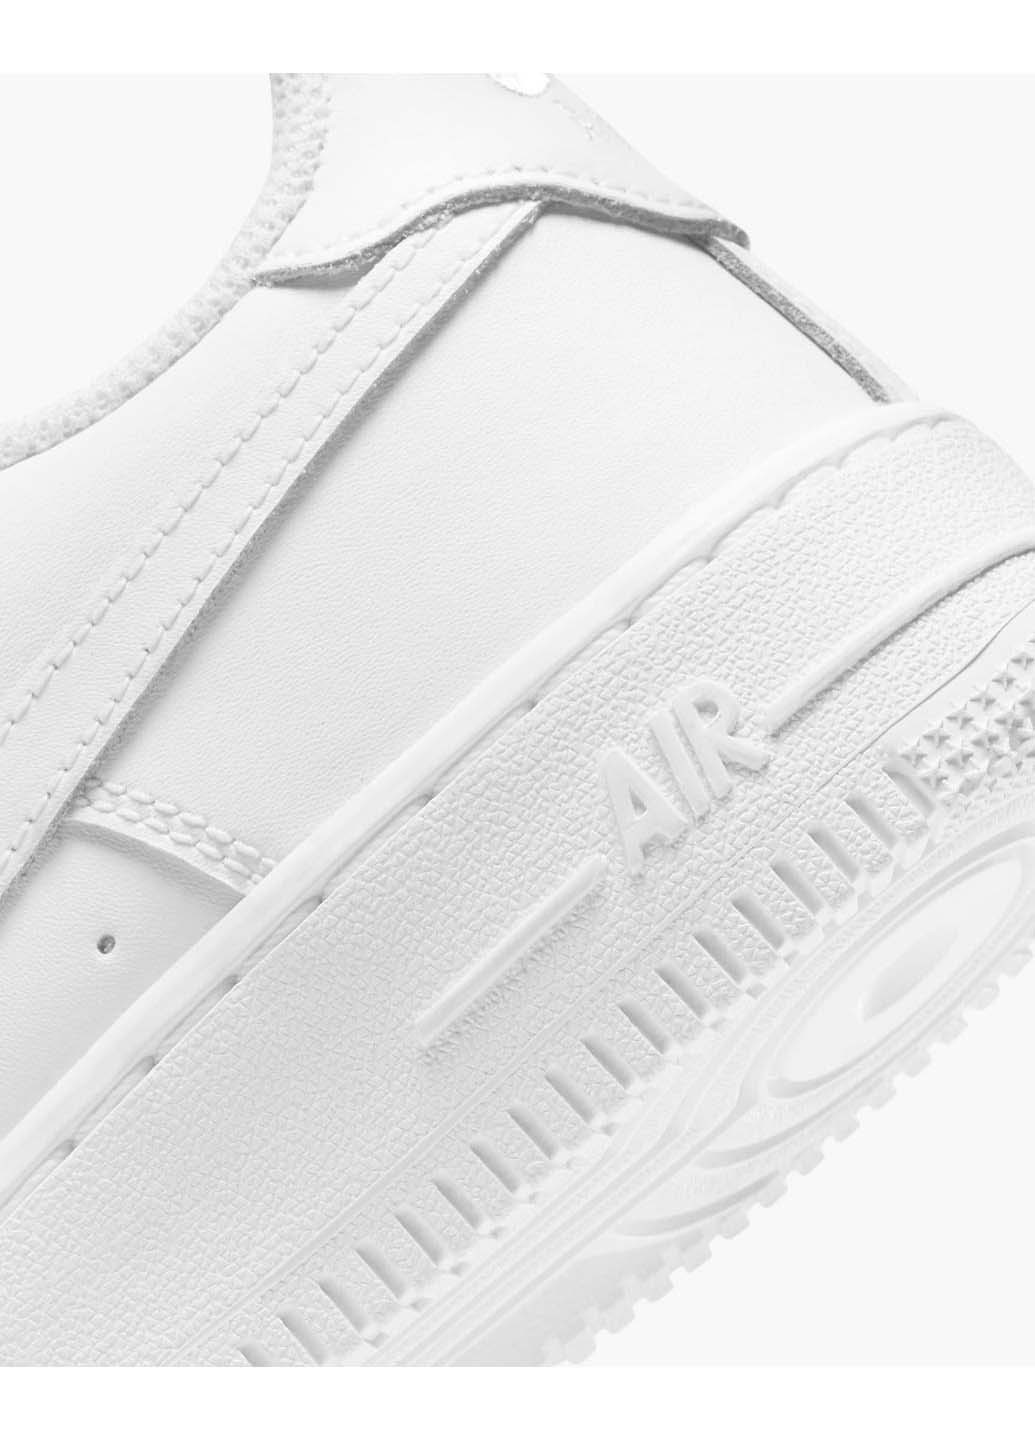 Белые демисезонные кроссовки Nike Air Force 1 Le